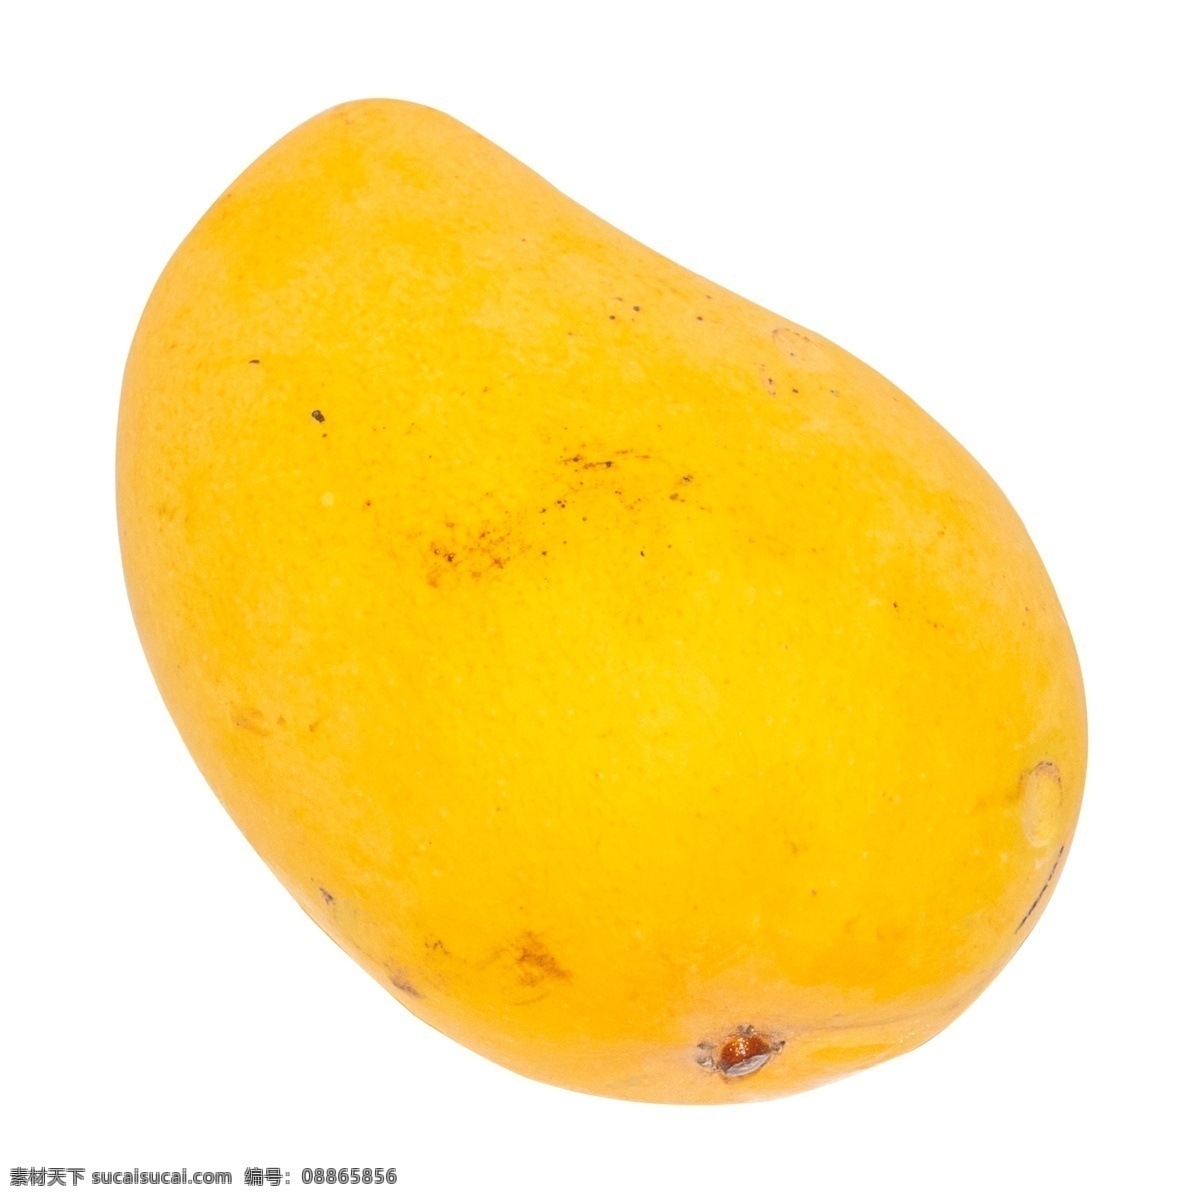 黄色水果芒果 水果 黄色 黄色水果 芒果 黄色芒果